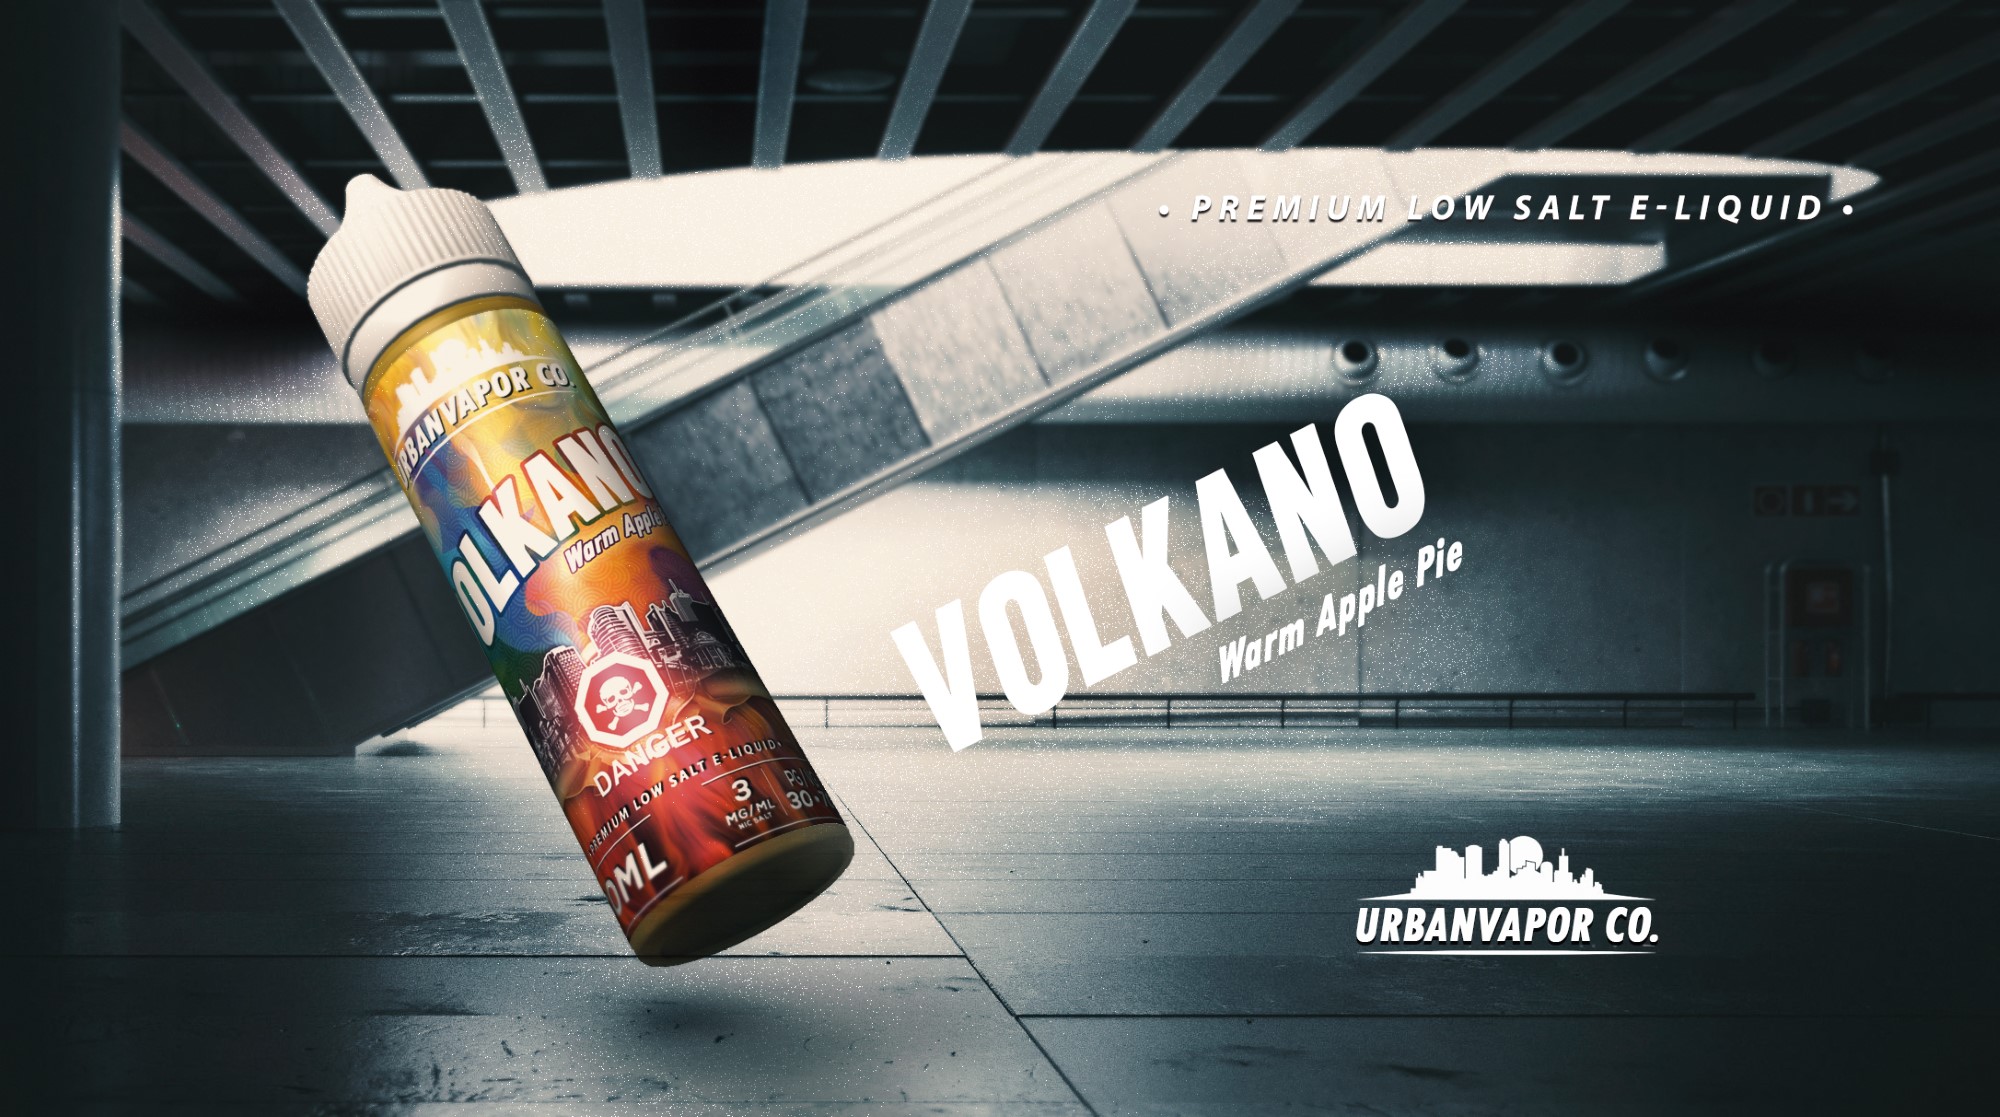 volkano-2-urban-vapor-co